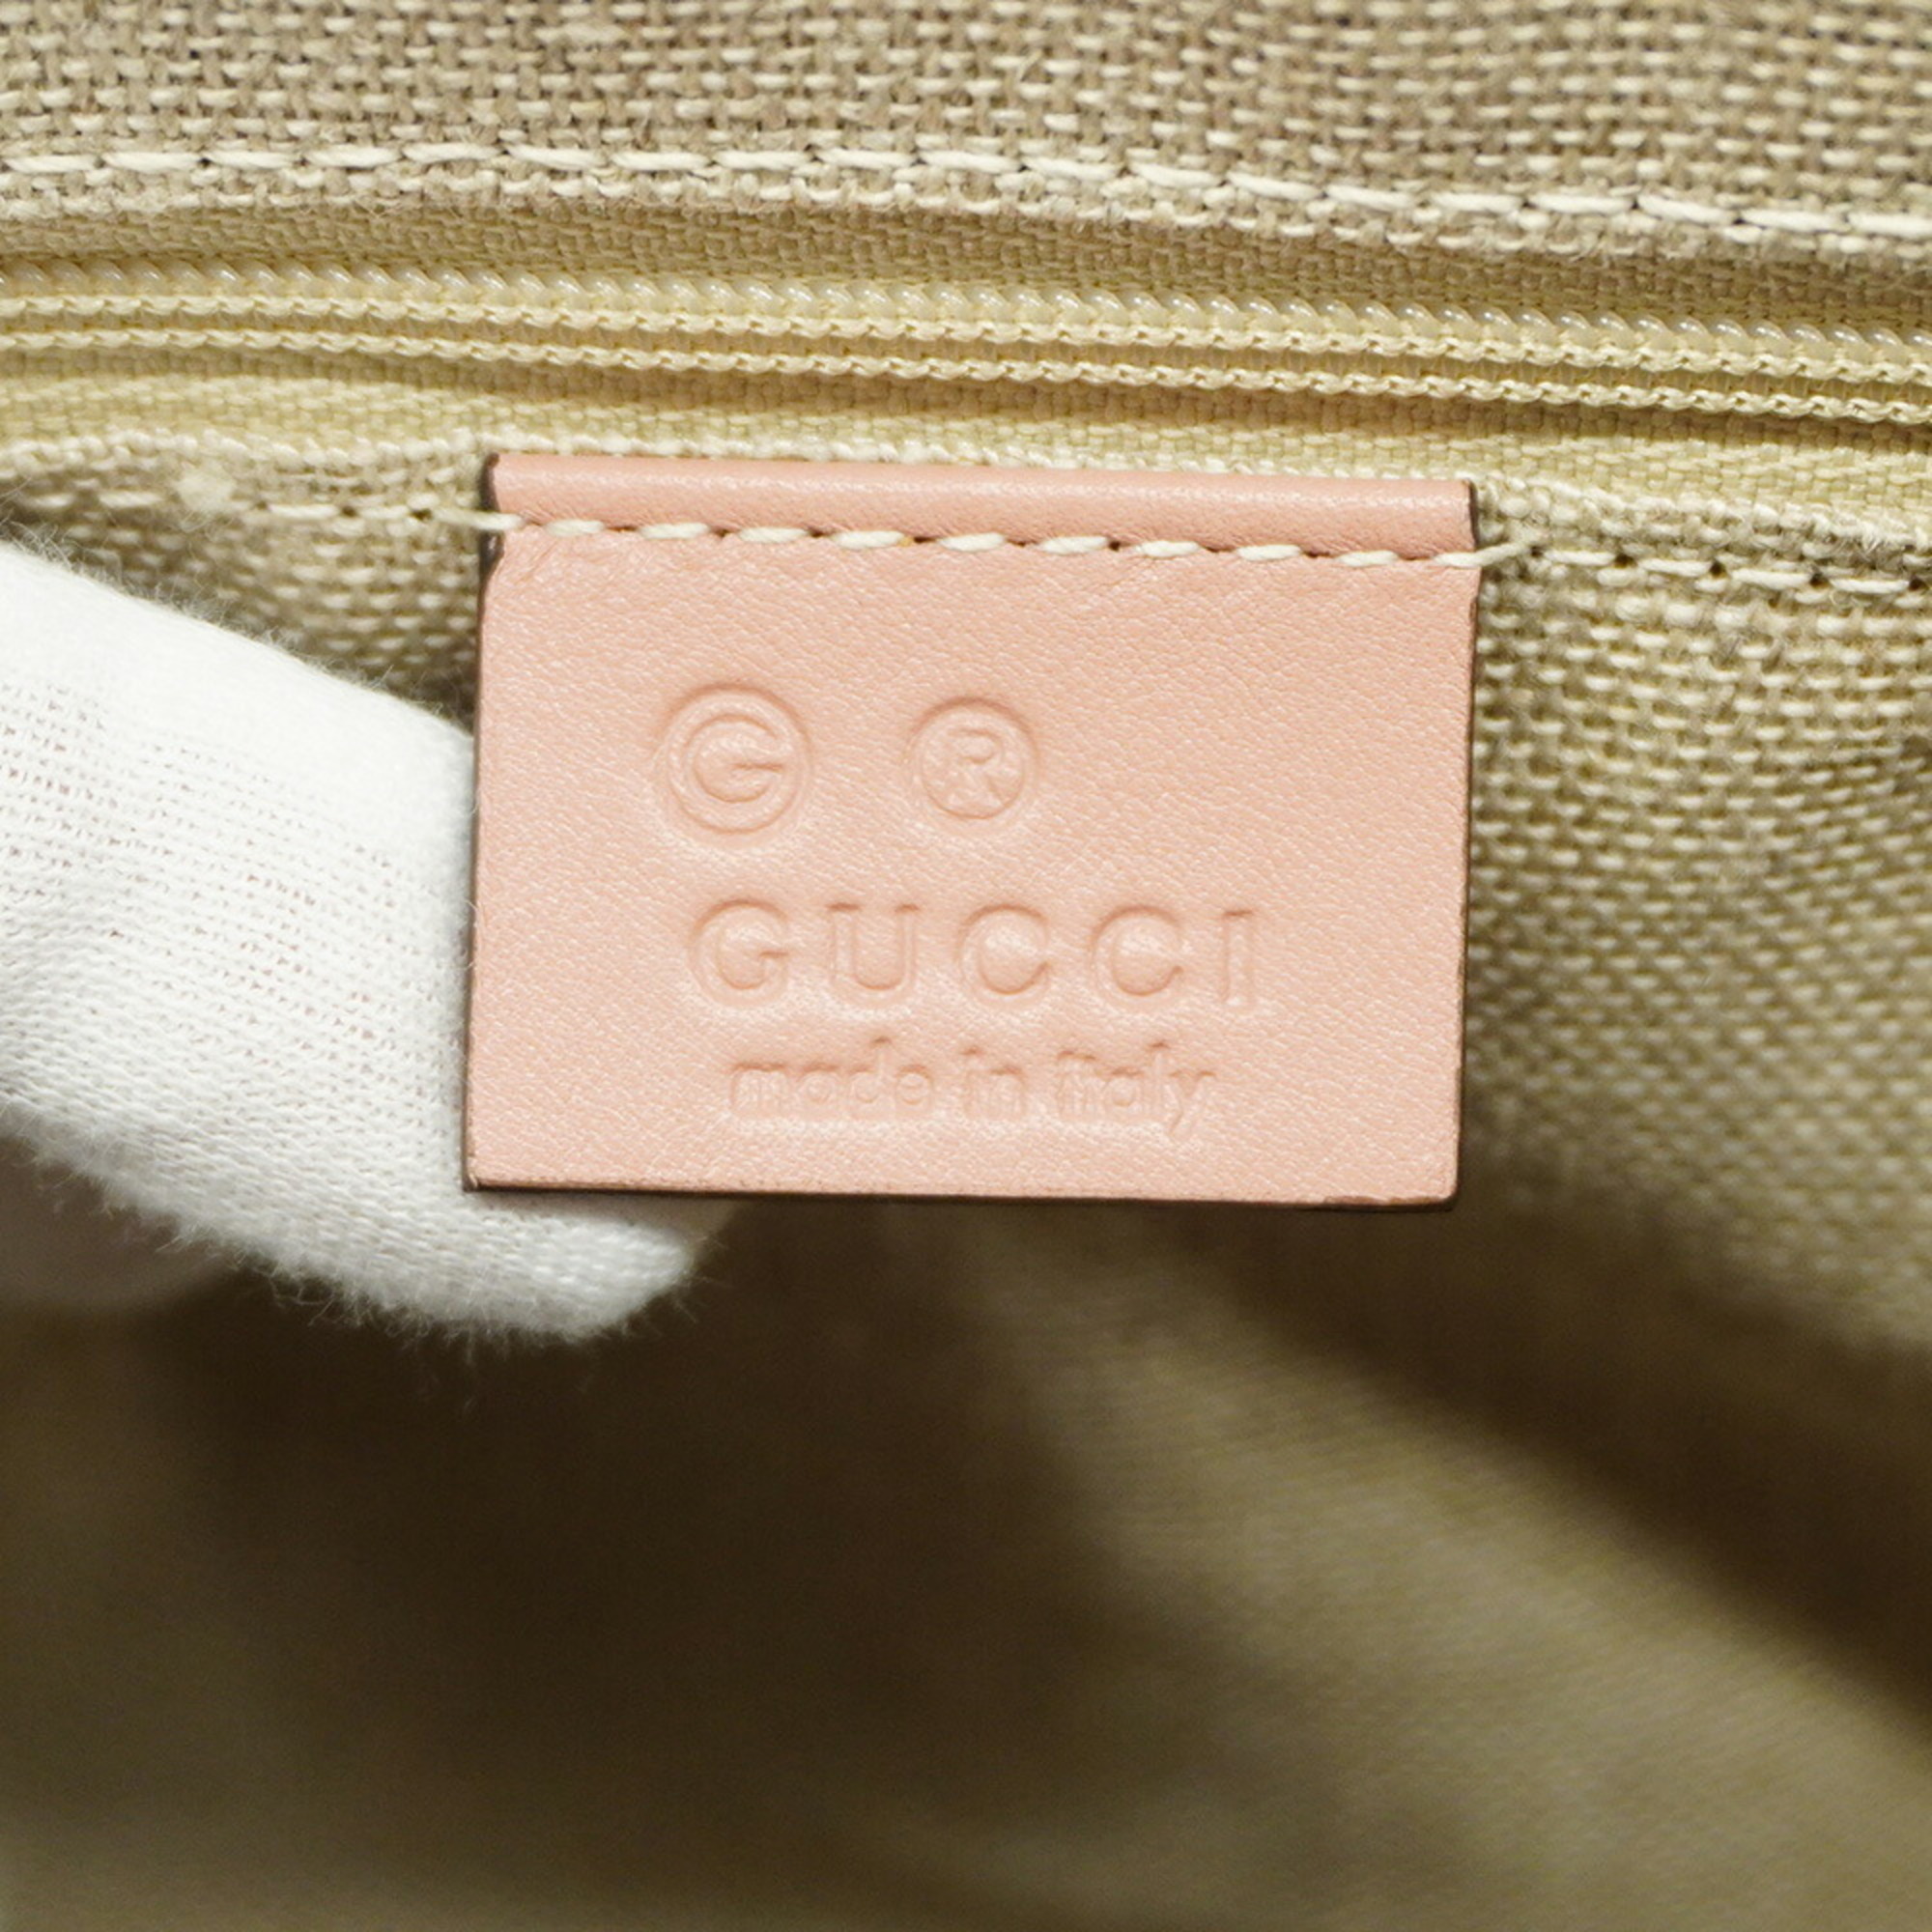 グッチ(Gucci) グッチ ハンドバッグ マイクログッチシマ 449657 レザー ピンク シャンパン  レディース